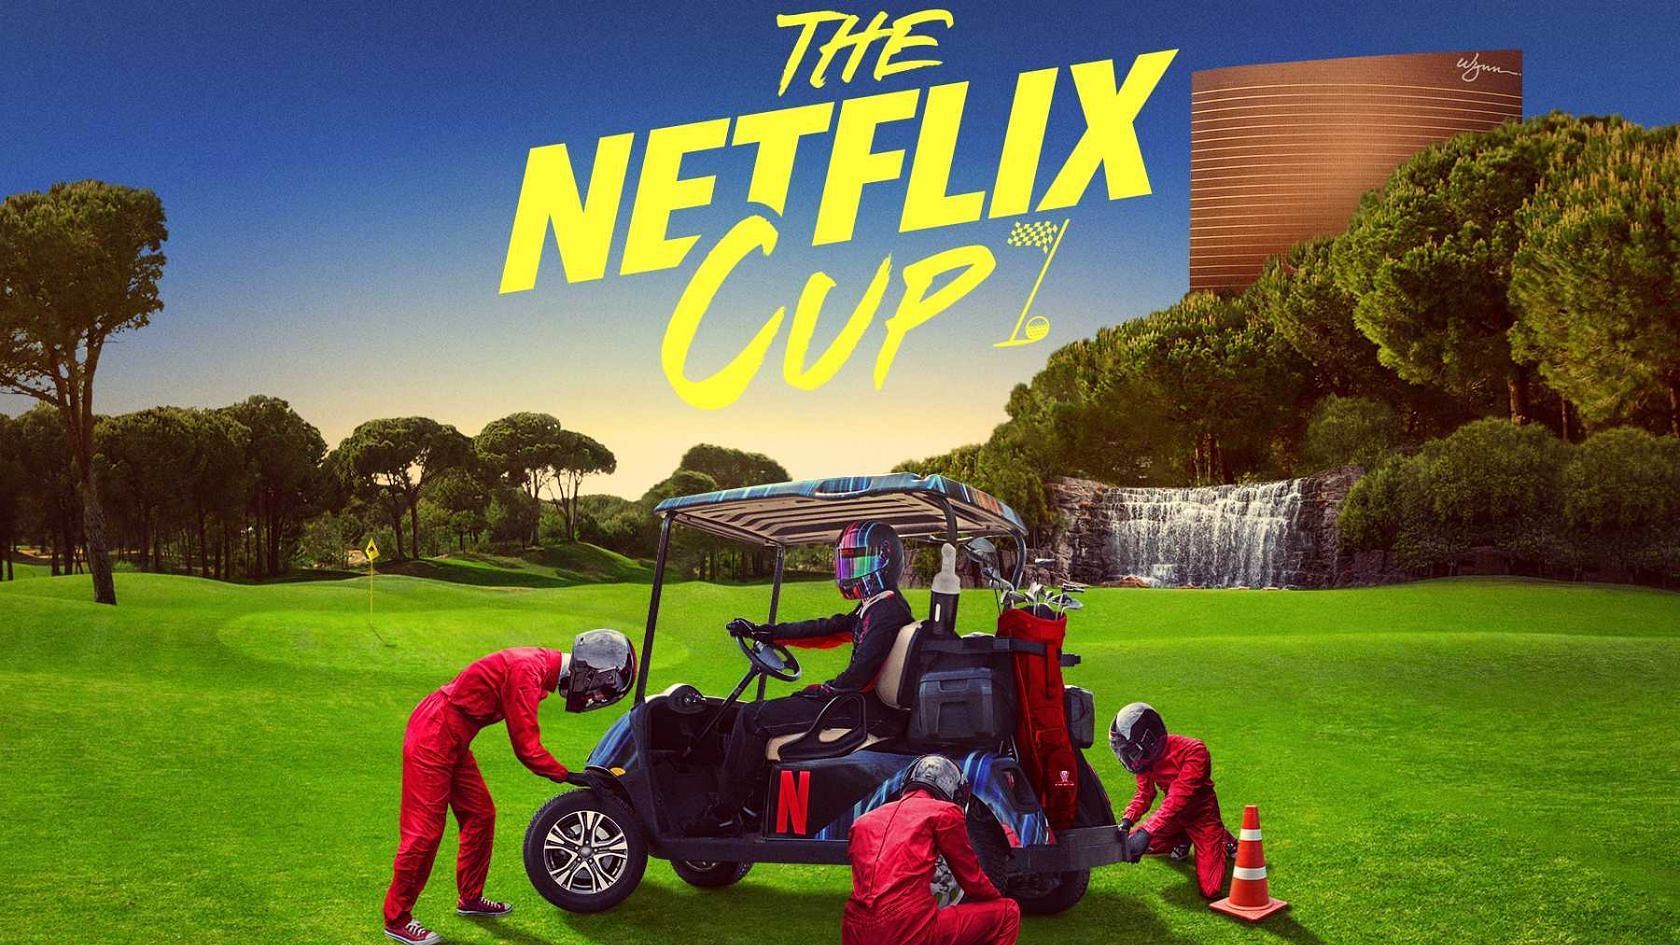 The Netflix Cup (Image via Twitter @/Netflix)